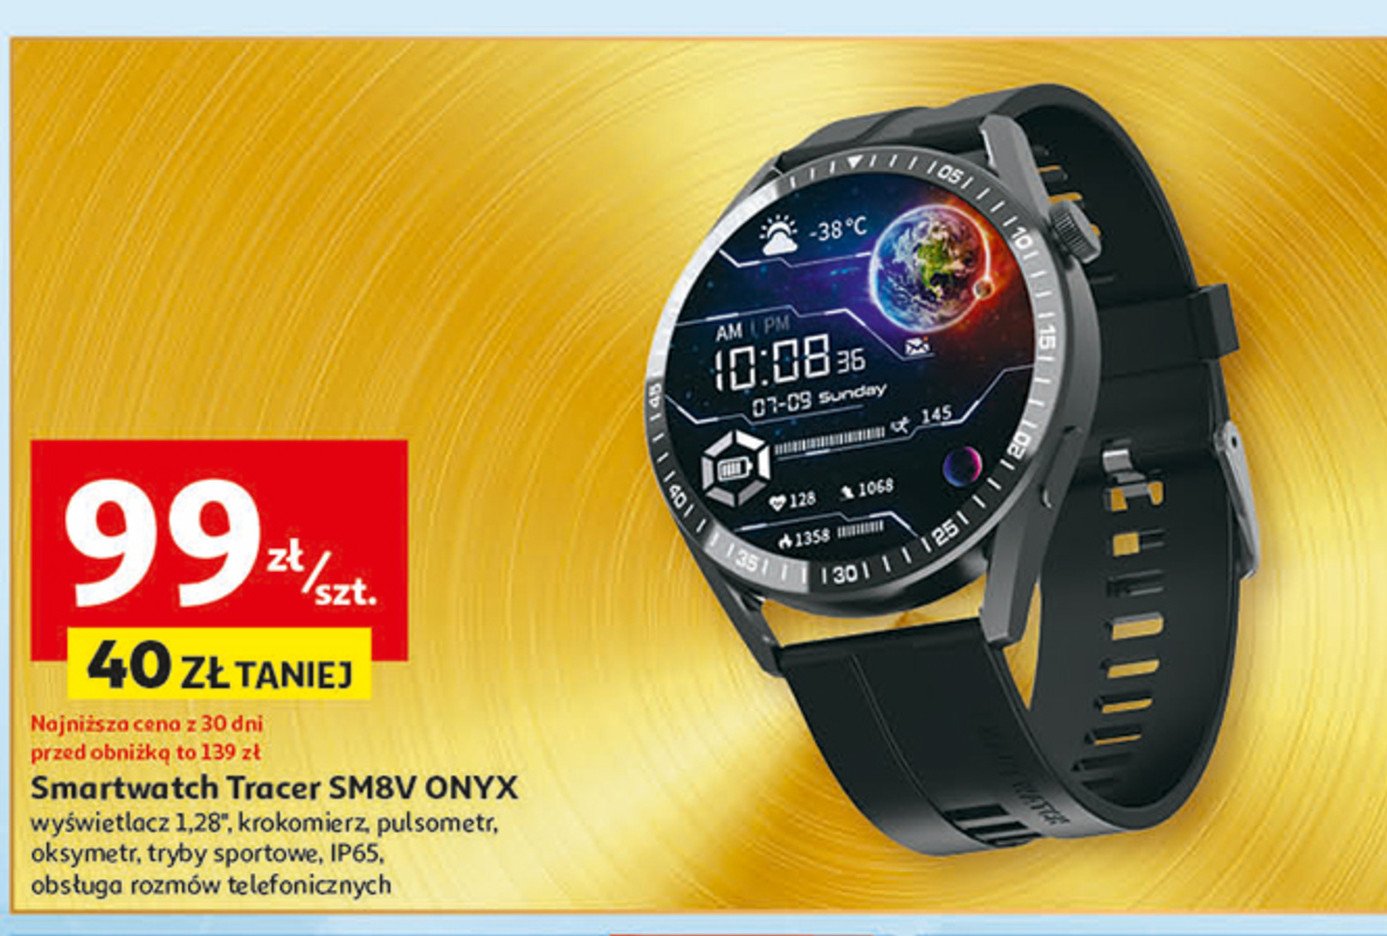 Smartwatch sm8v onyx Tracer promocja